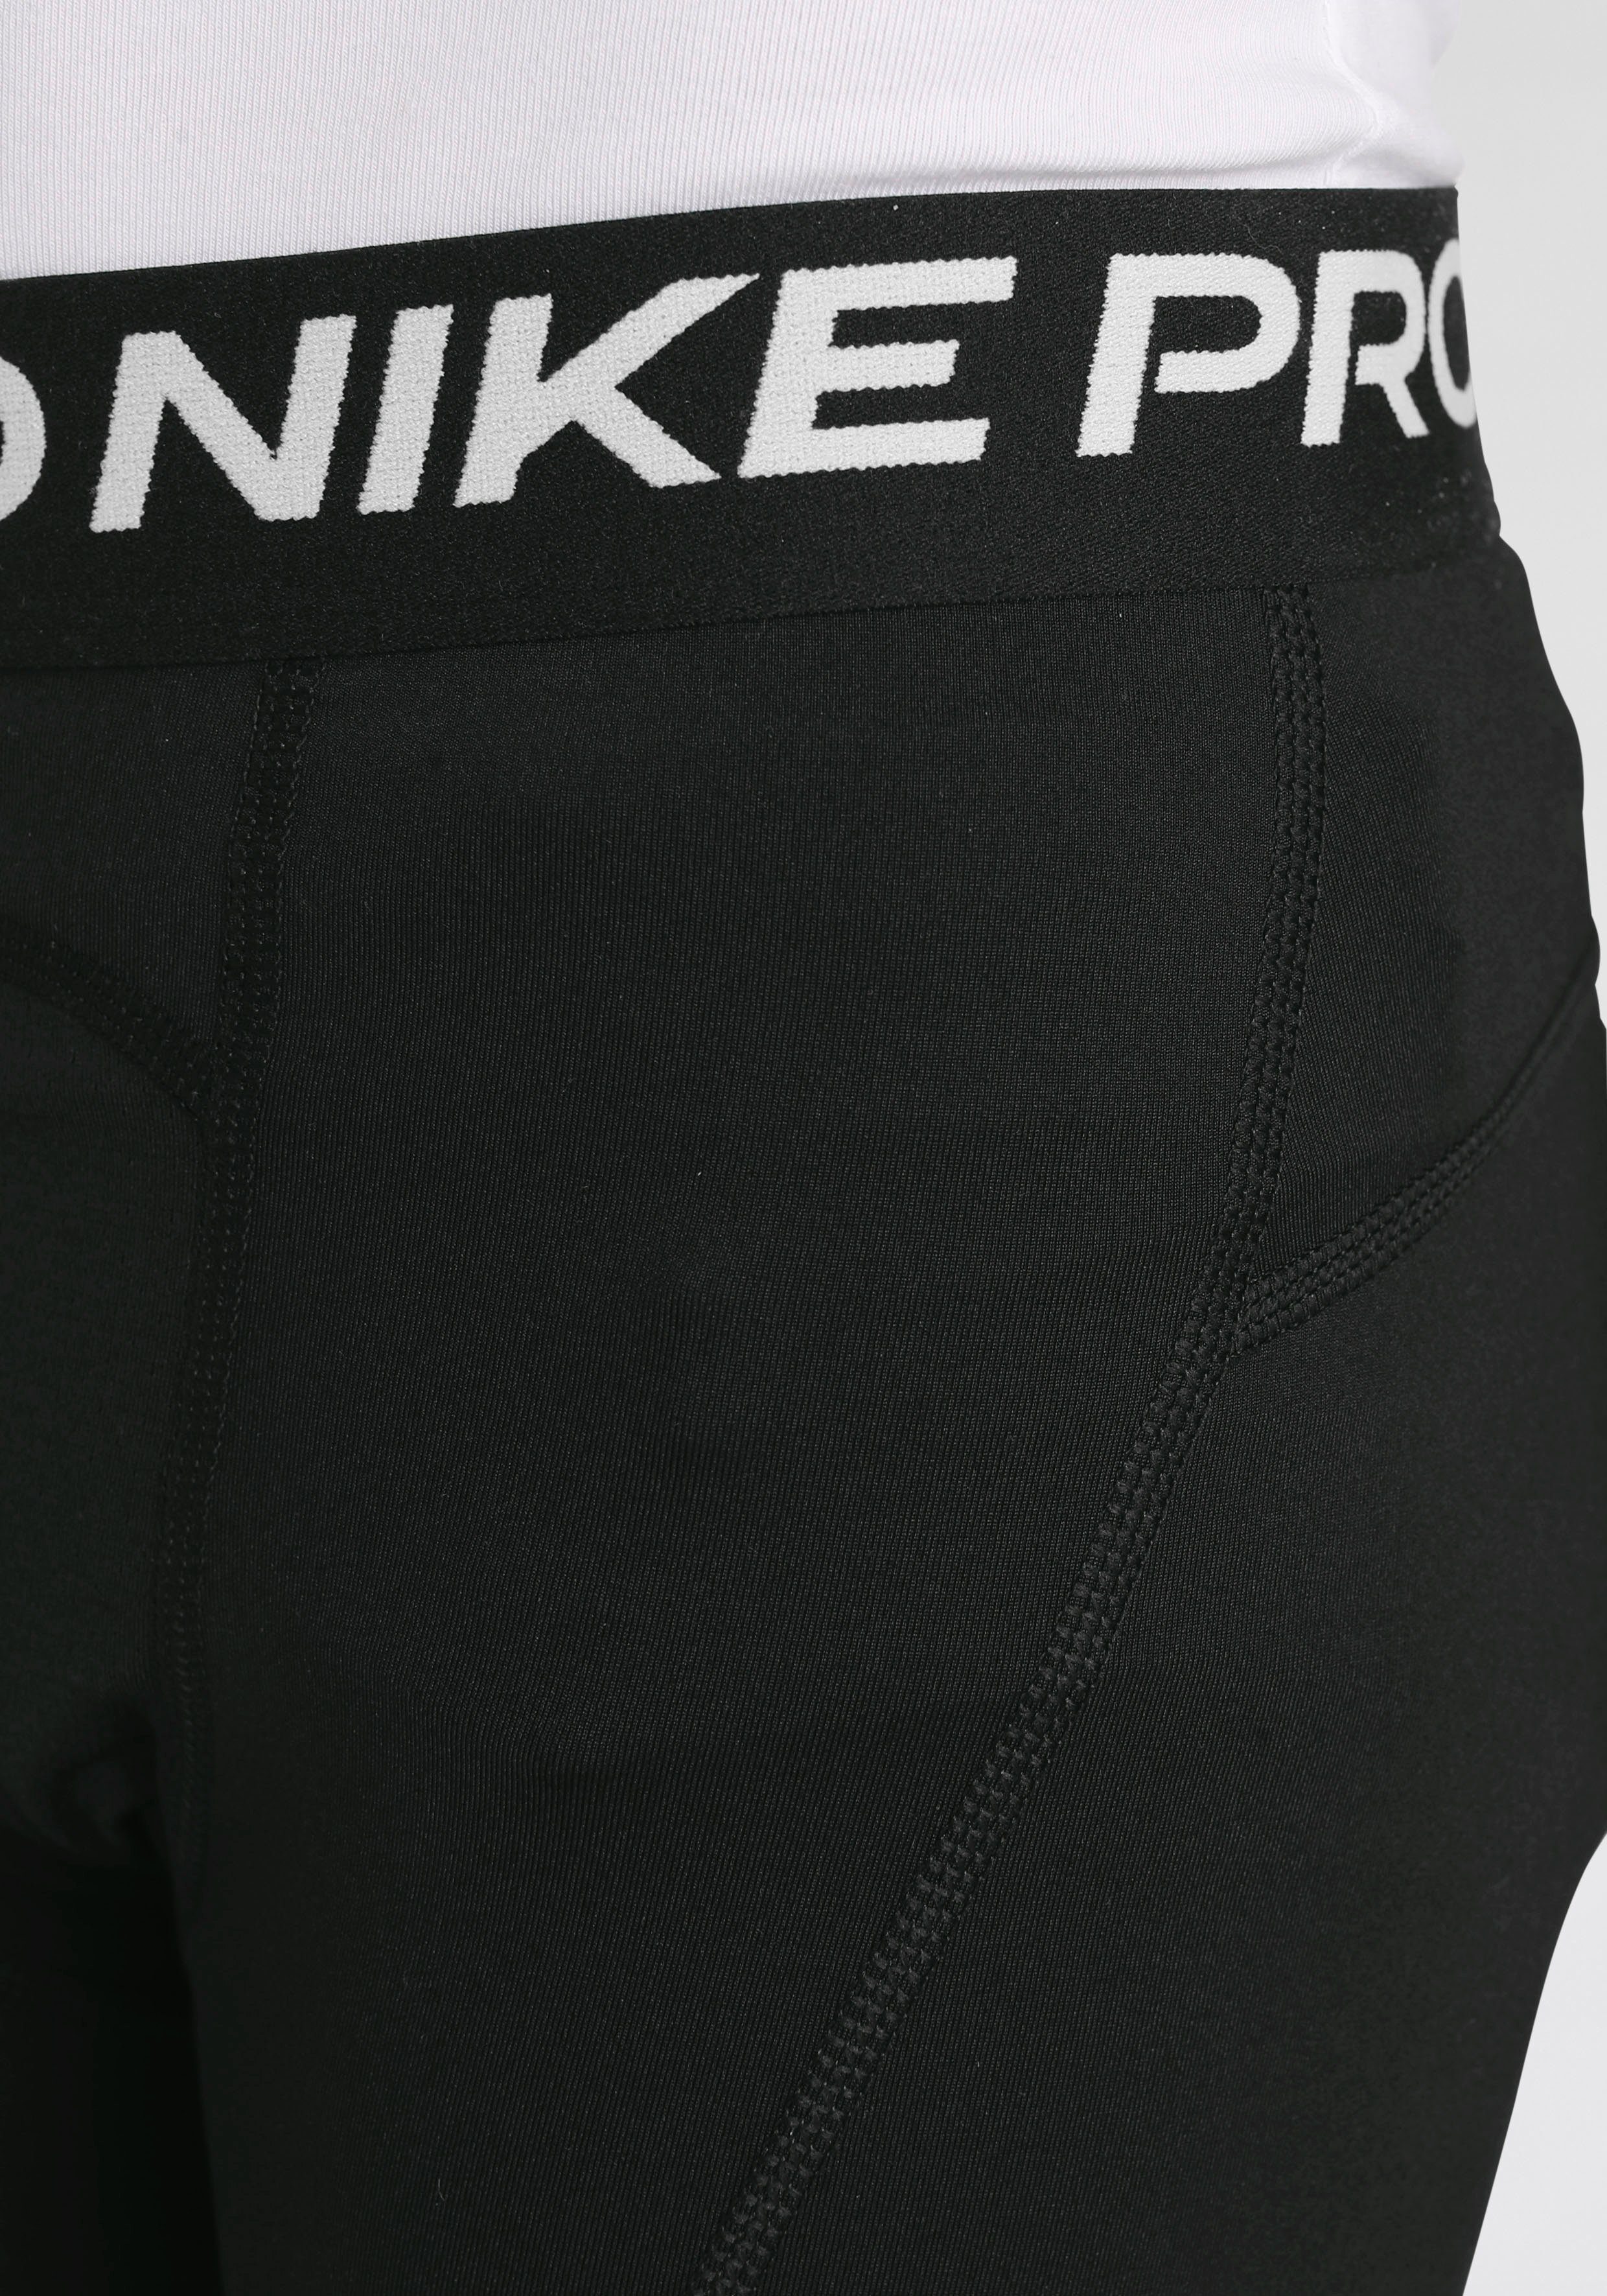 Pro Shorts Dri-FIT Nike Big Kids' Shorts (Boys)